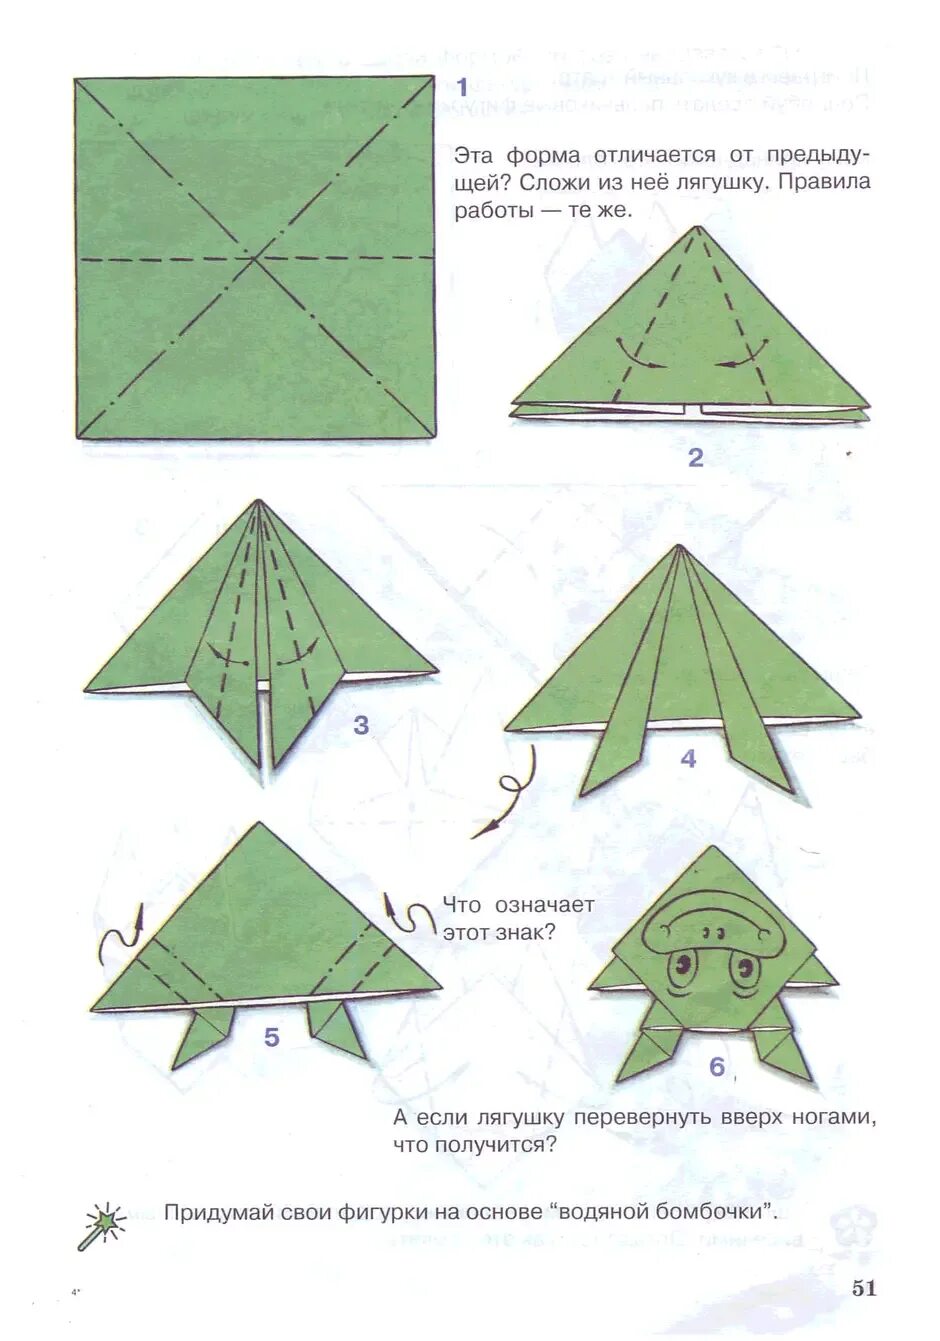 Простые оригами лягушка. Оригами лягушка из бумаги пошаговой инструкции для детей. Лягушка оригами из бумаги схемы для детей простая. Лягушка оригами из бумаги прыгающая схема для детей. Оригами из бумаги лягушка схема для начинающих пошаговая инструкция.